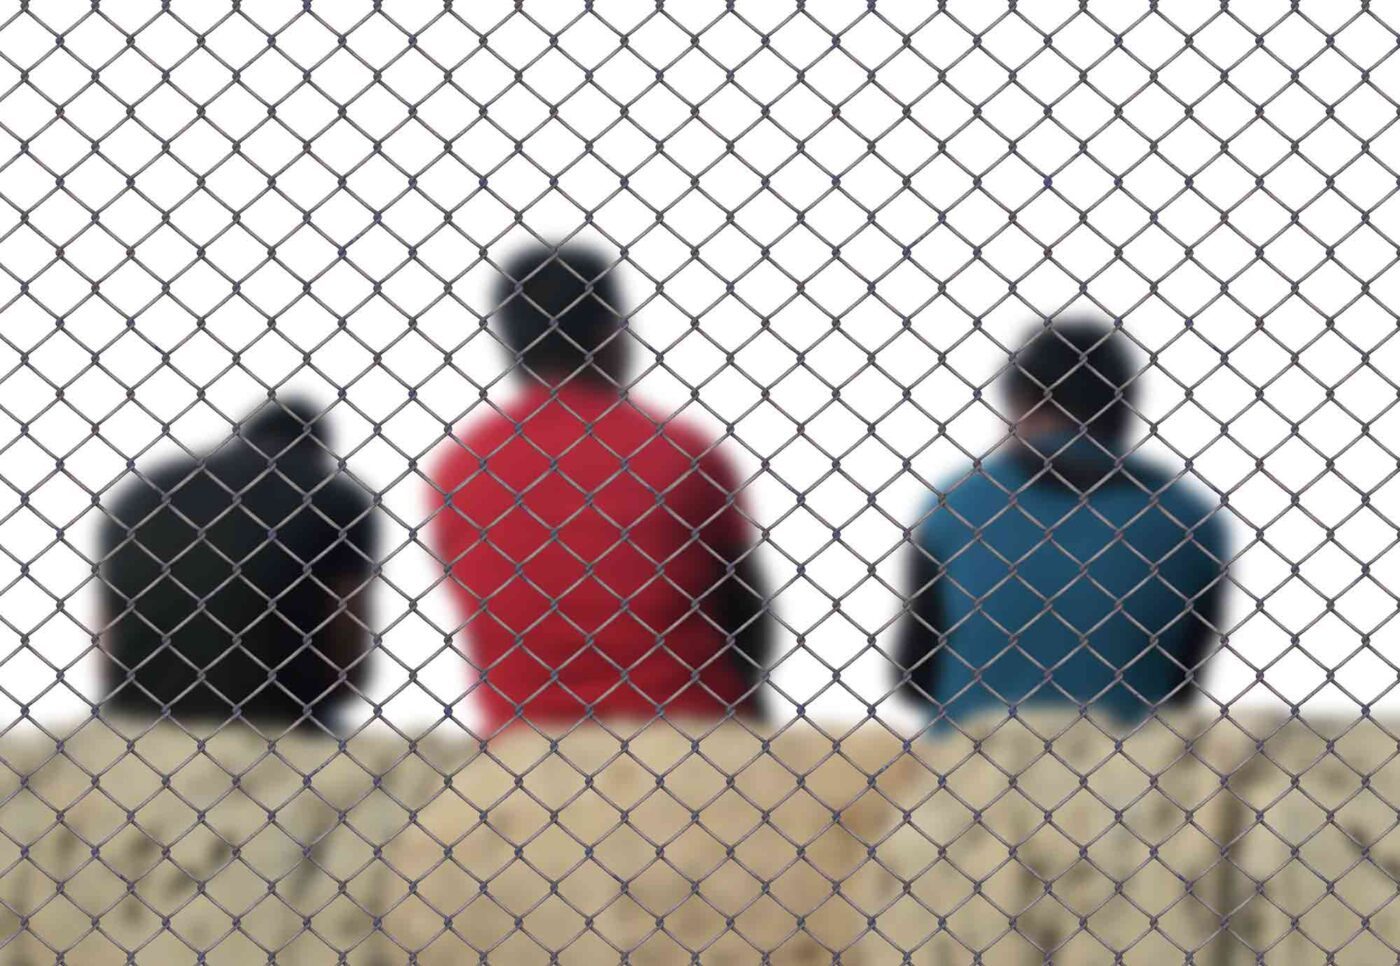 Die Abschiebung von in einem Land stark verwurzelten Menschen widerspricht, wie die Diakonie betont, der Europäischen Menschenrechtskonvention. (Foto: Pixabay / Gerd Altmann)